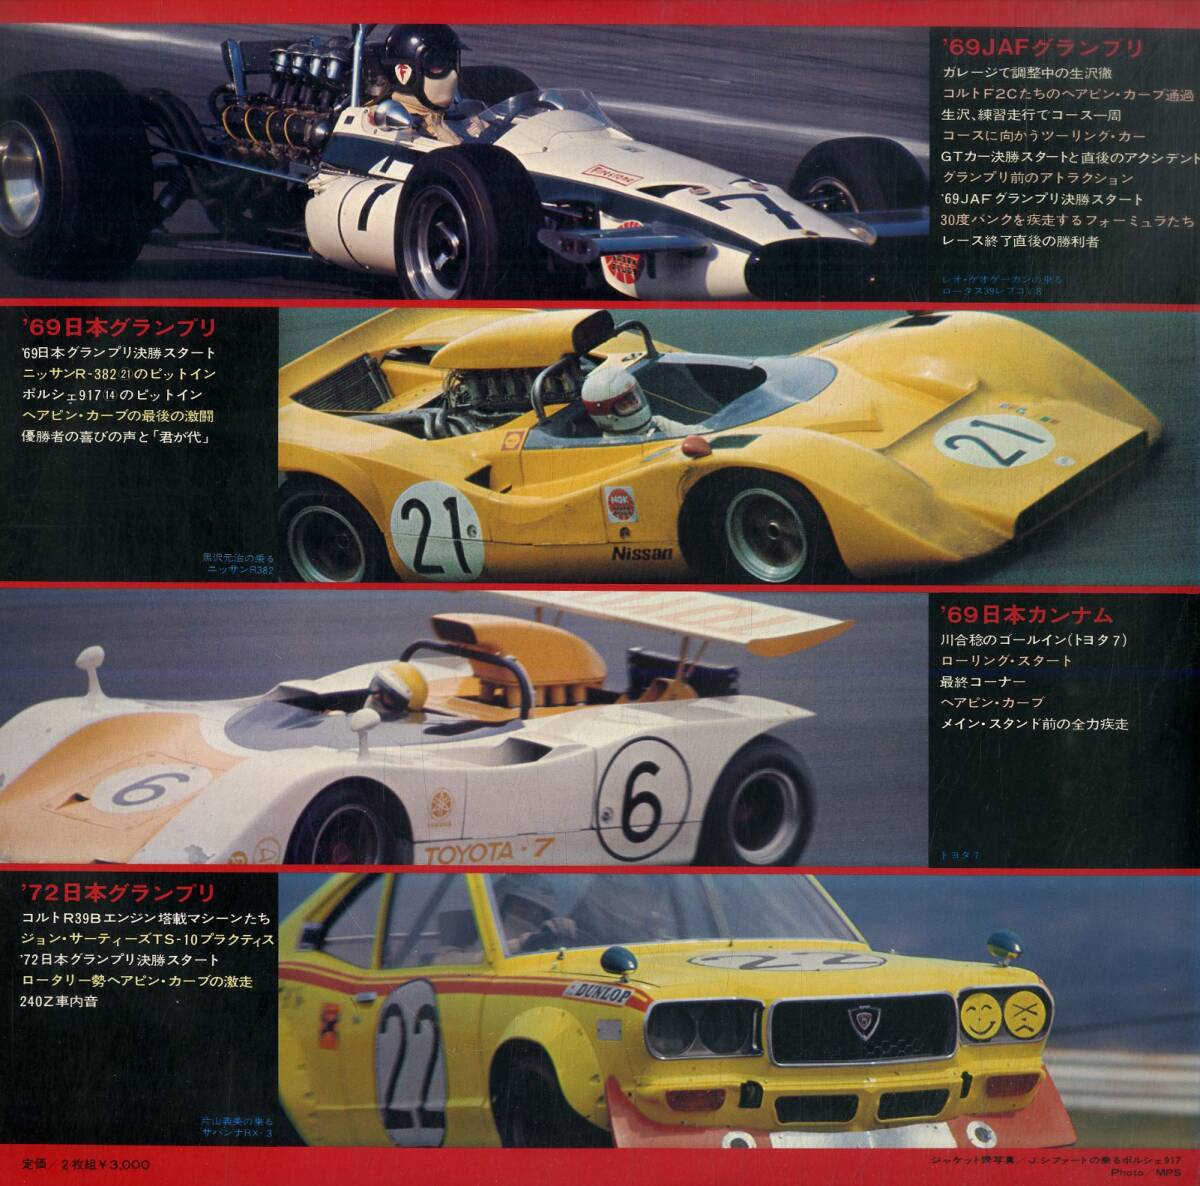 A00589370/LP2枚組/「レーシング・サウンド・ダイナミックス FISCO決死のコンペティションの記録 (1977年・GW-7026-7・フィールドレコーの画像2